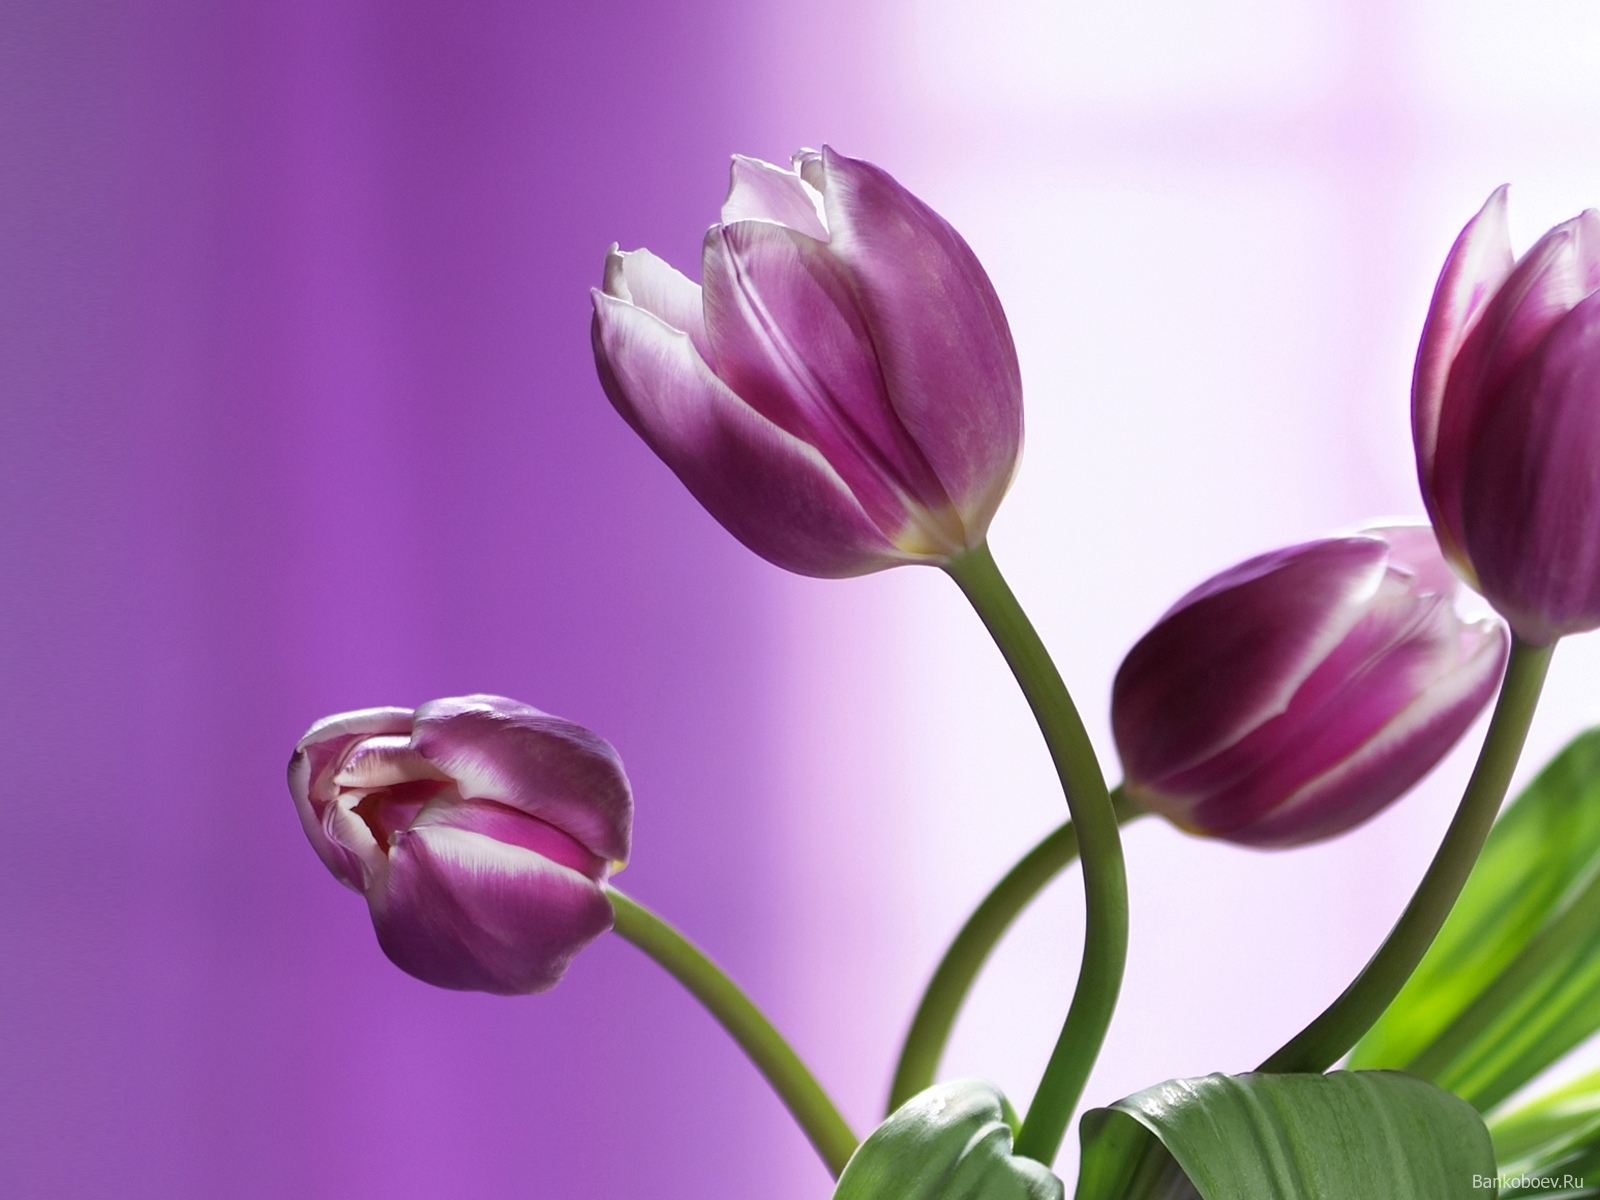 Descarga gratuita de fondo de pantalla para móvil de Tulipanes, Flores, Plantas, Violeta.